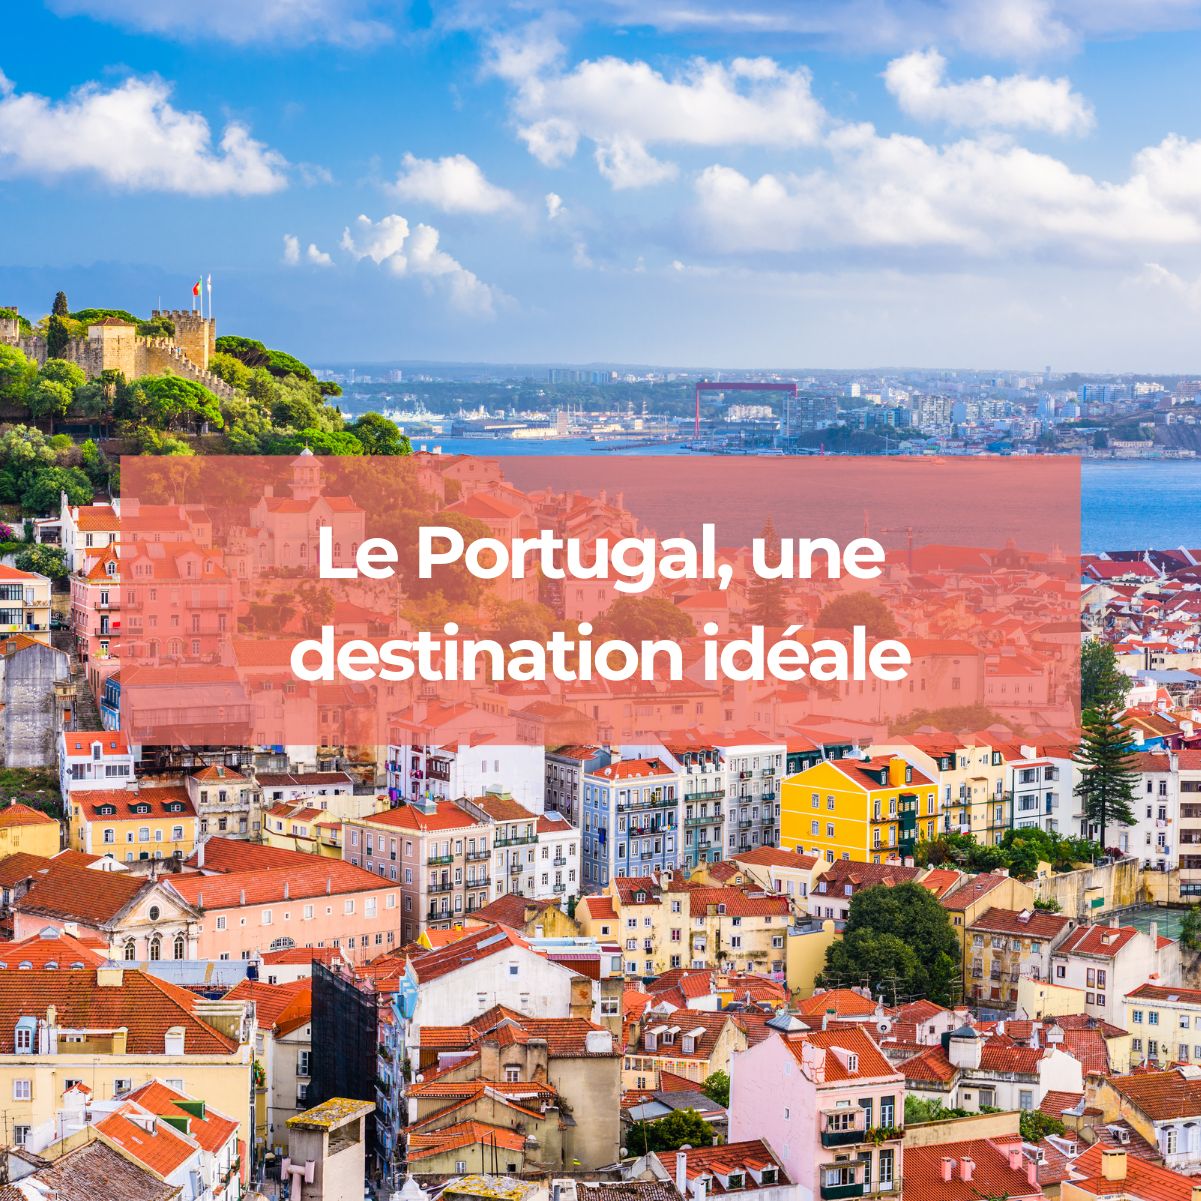 Le Portugal, une destination idéale pour des vacances inédites et une expérience inoubliable !